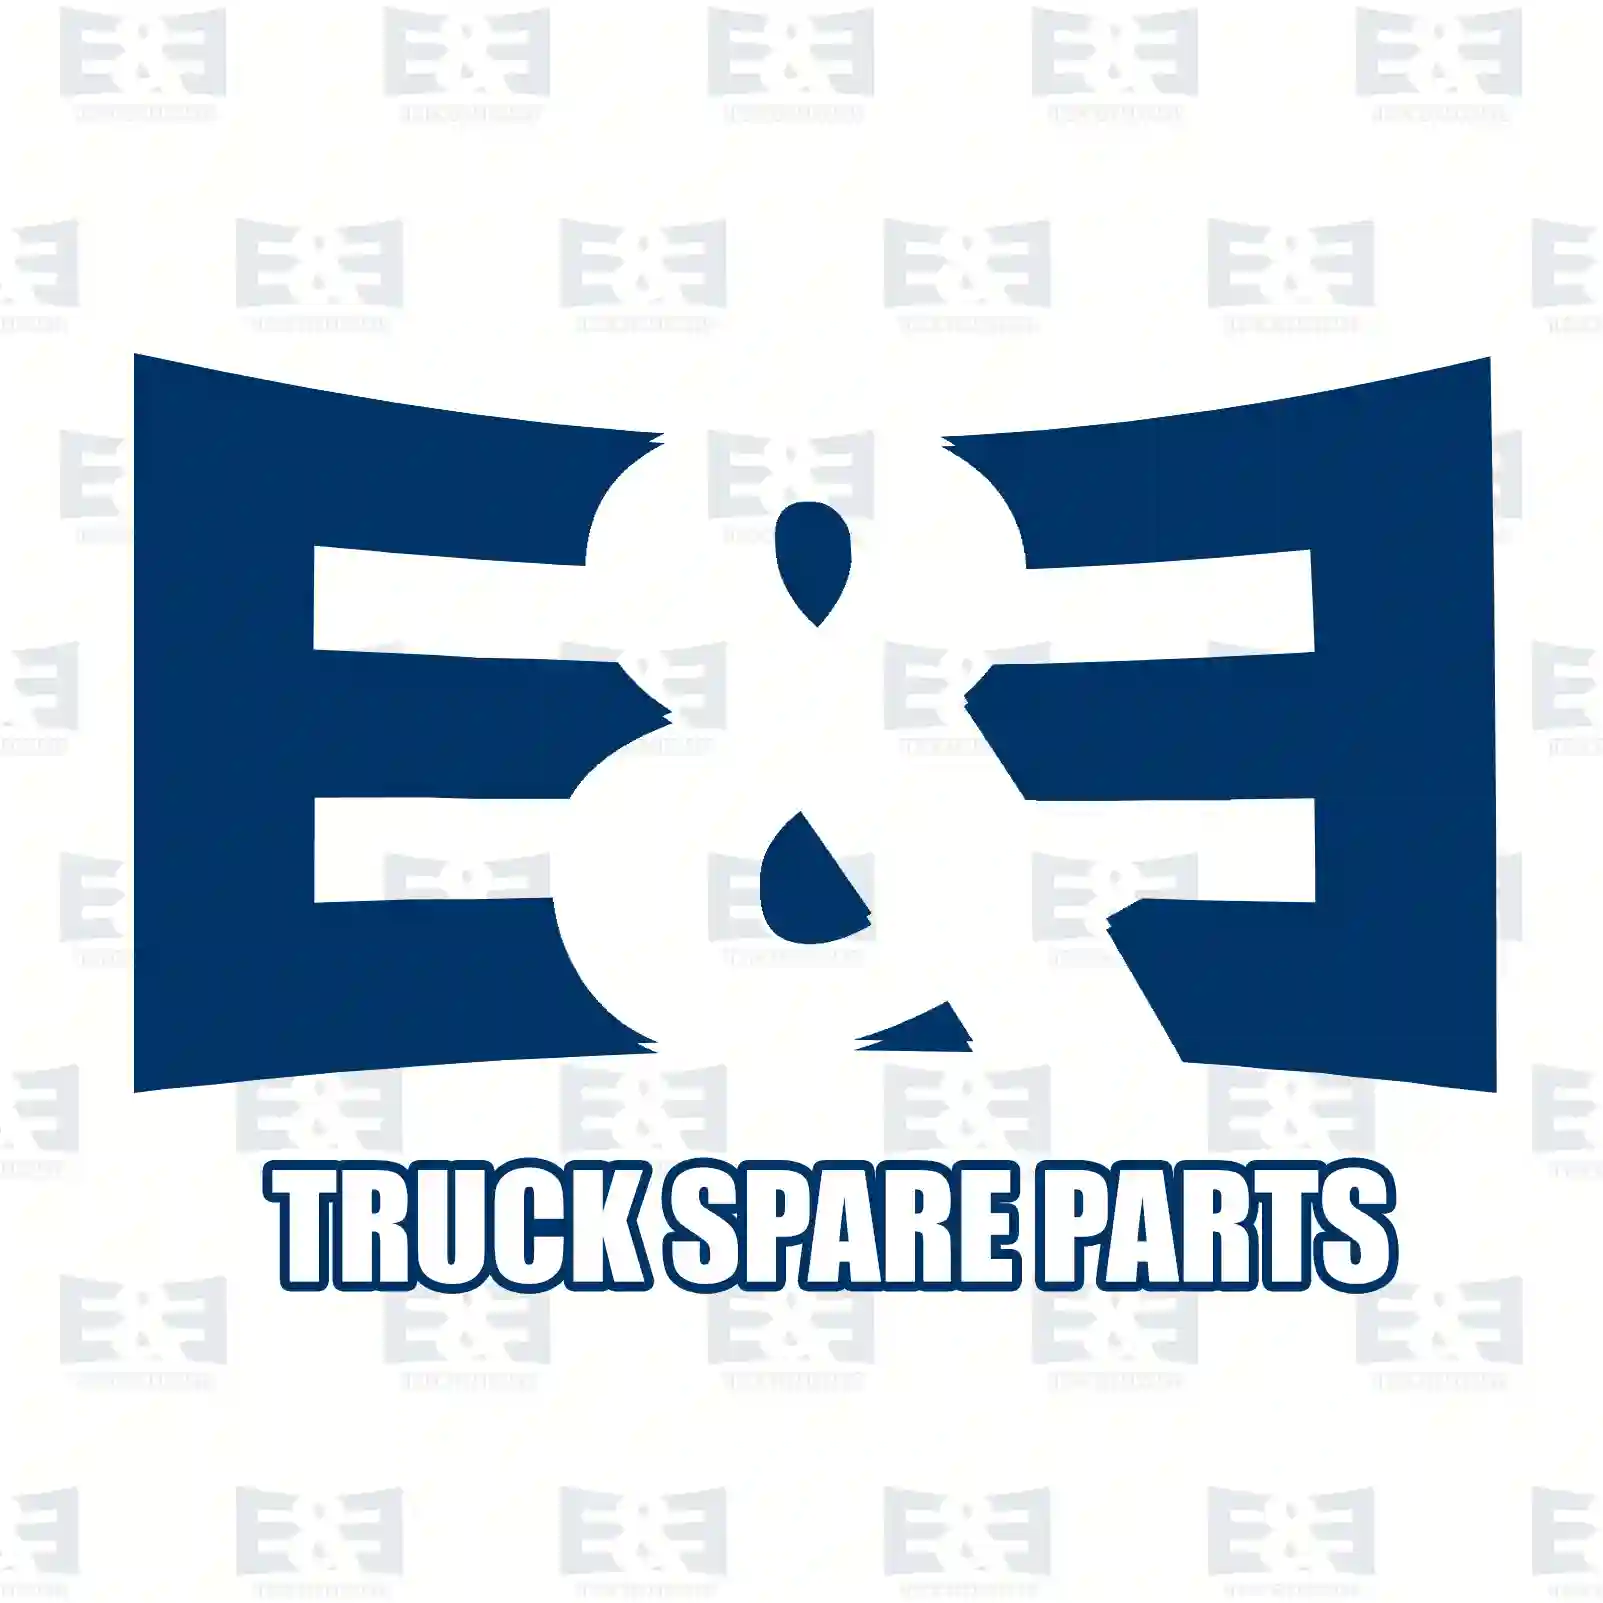 O-ring, 2E2209640, 229973448, 022997 ||  2E2209640 E&E Truck Spare Parts | Truck Spare Parts, Auotomotive Spare Parts O-ring, 2E2209640, 229973448, 022997 ||  2E2209640 E&E Truck Spare Parts | Truck Spare Parts, Auotomotive Spare Parts